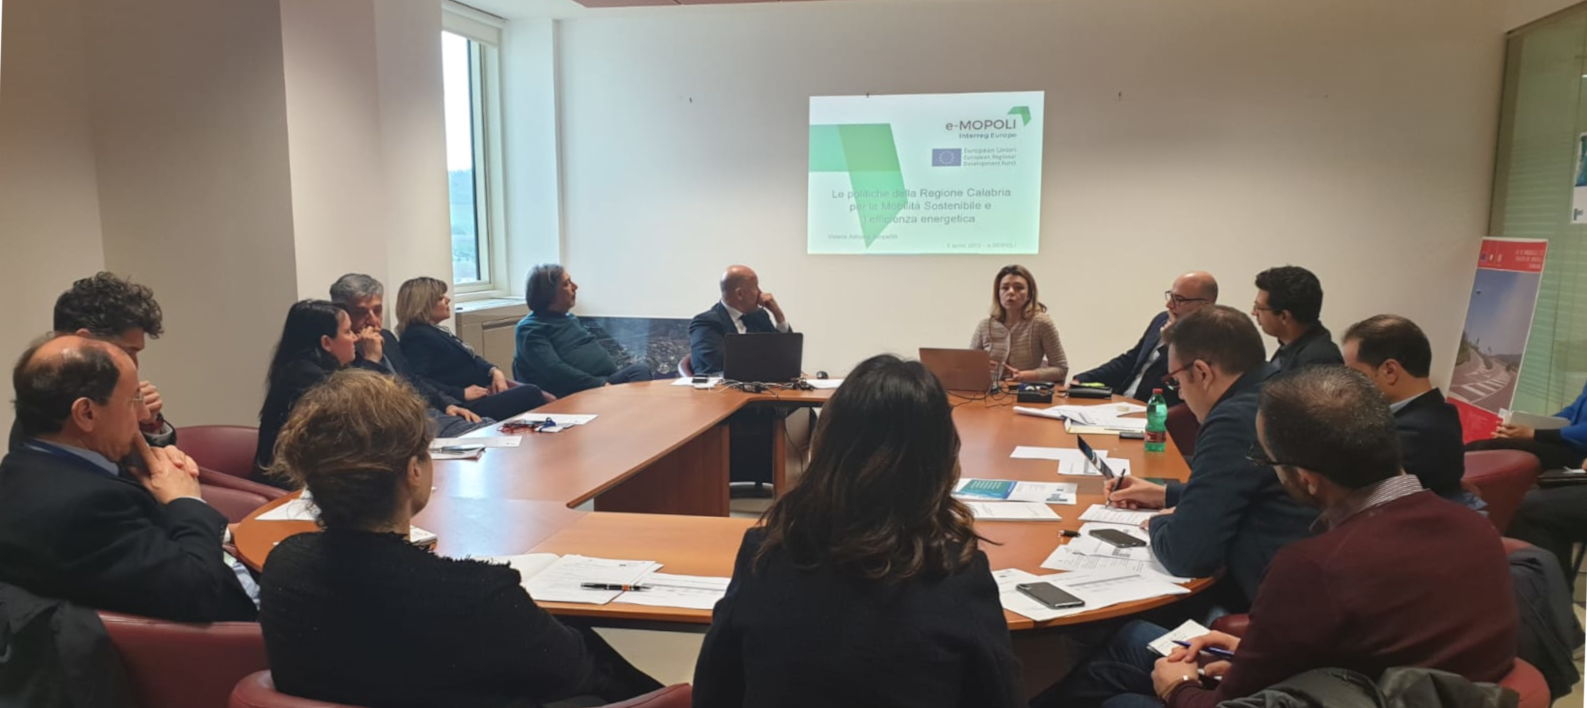 [WRSG1] Regional stakeholders workshop in Catanzaro